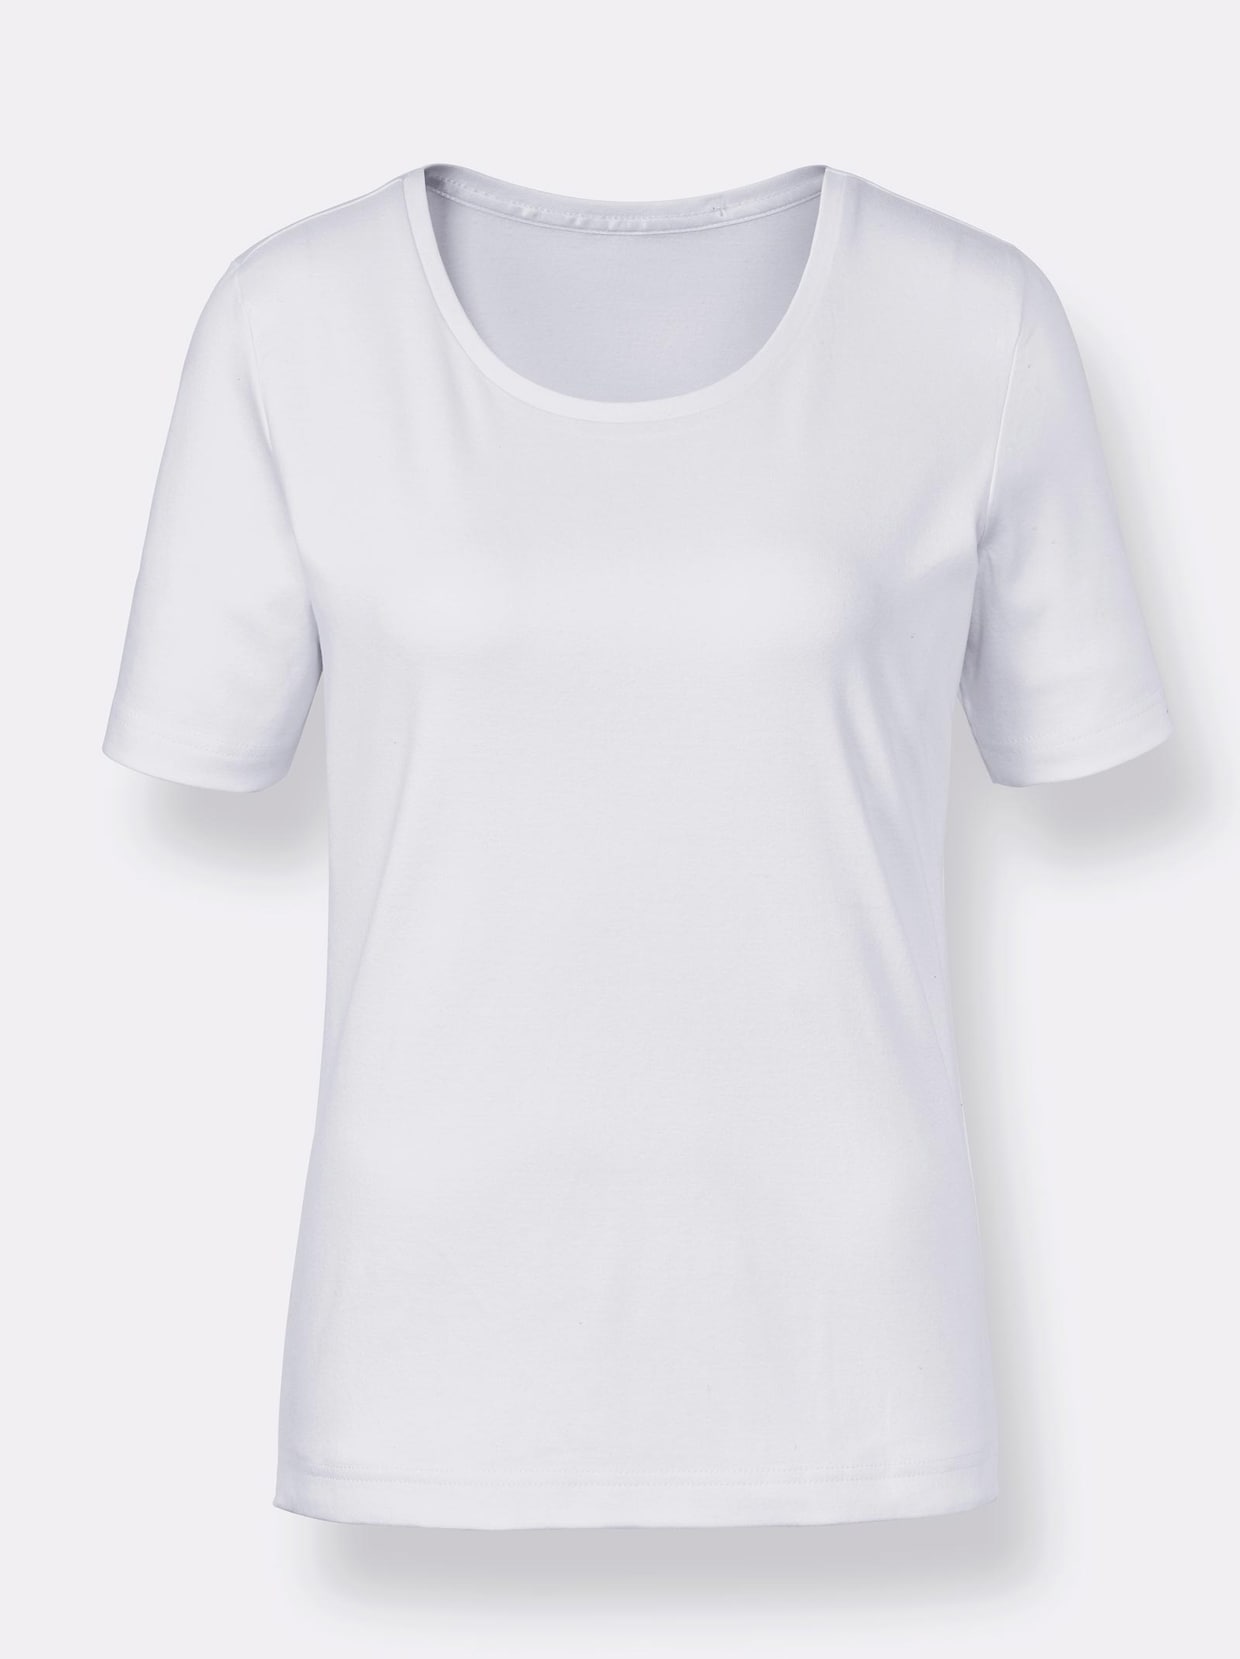 Creation L Premium Baumwoll-Shirt - weiß